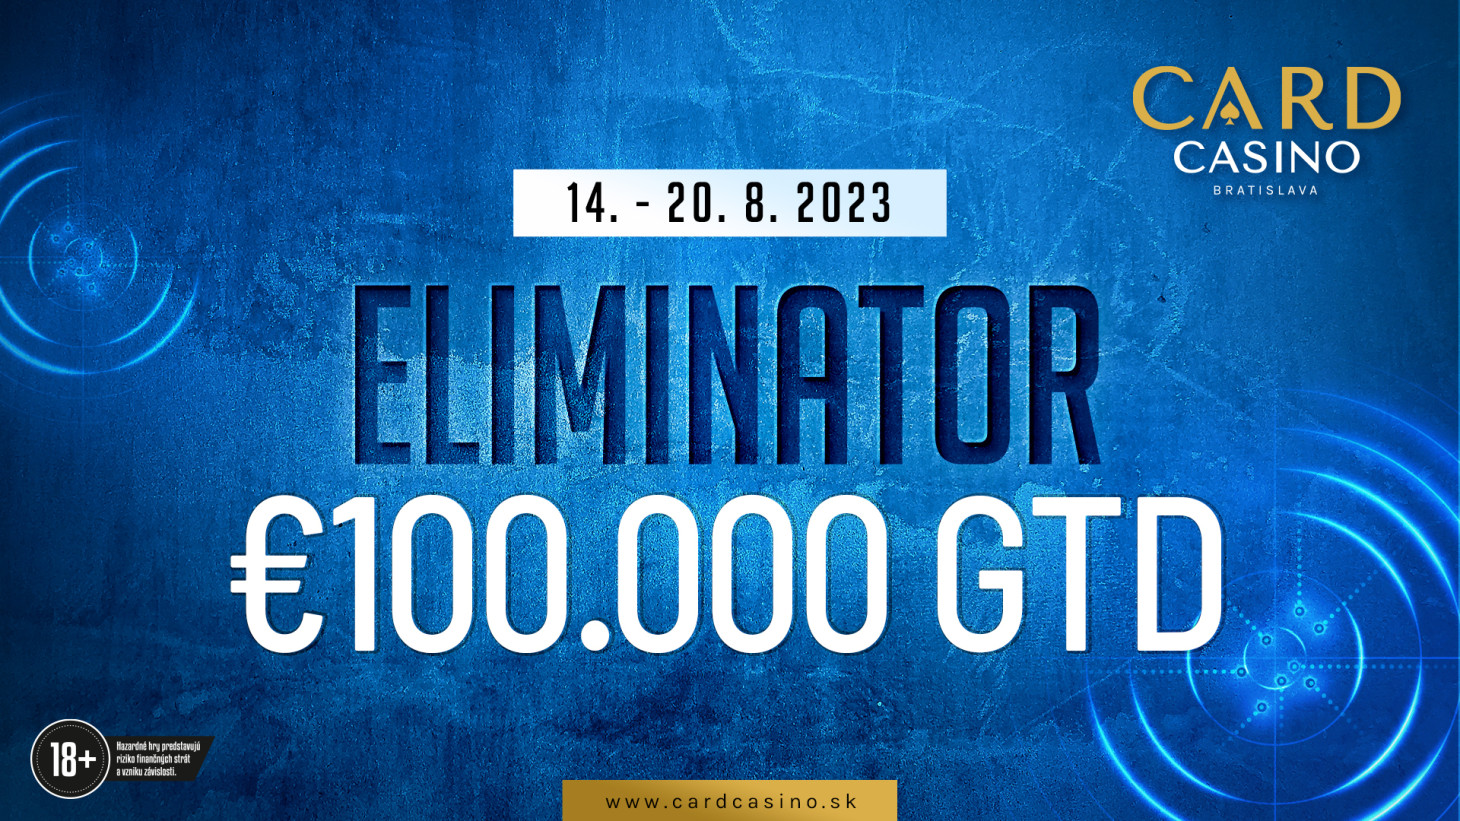 Der August steht ganz im Zeichen von K.O. Ein attraktiver 100.000 € ELIMINATOR erwartet die Spieler